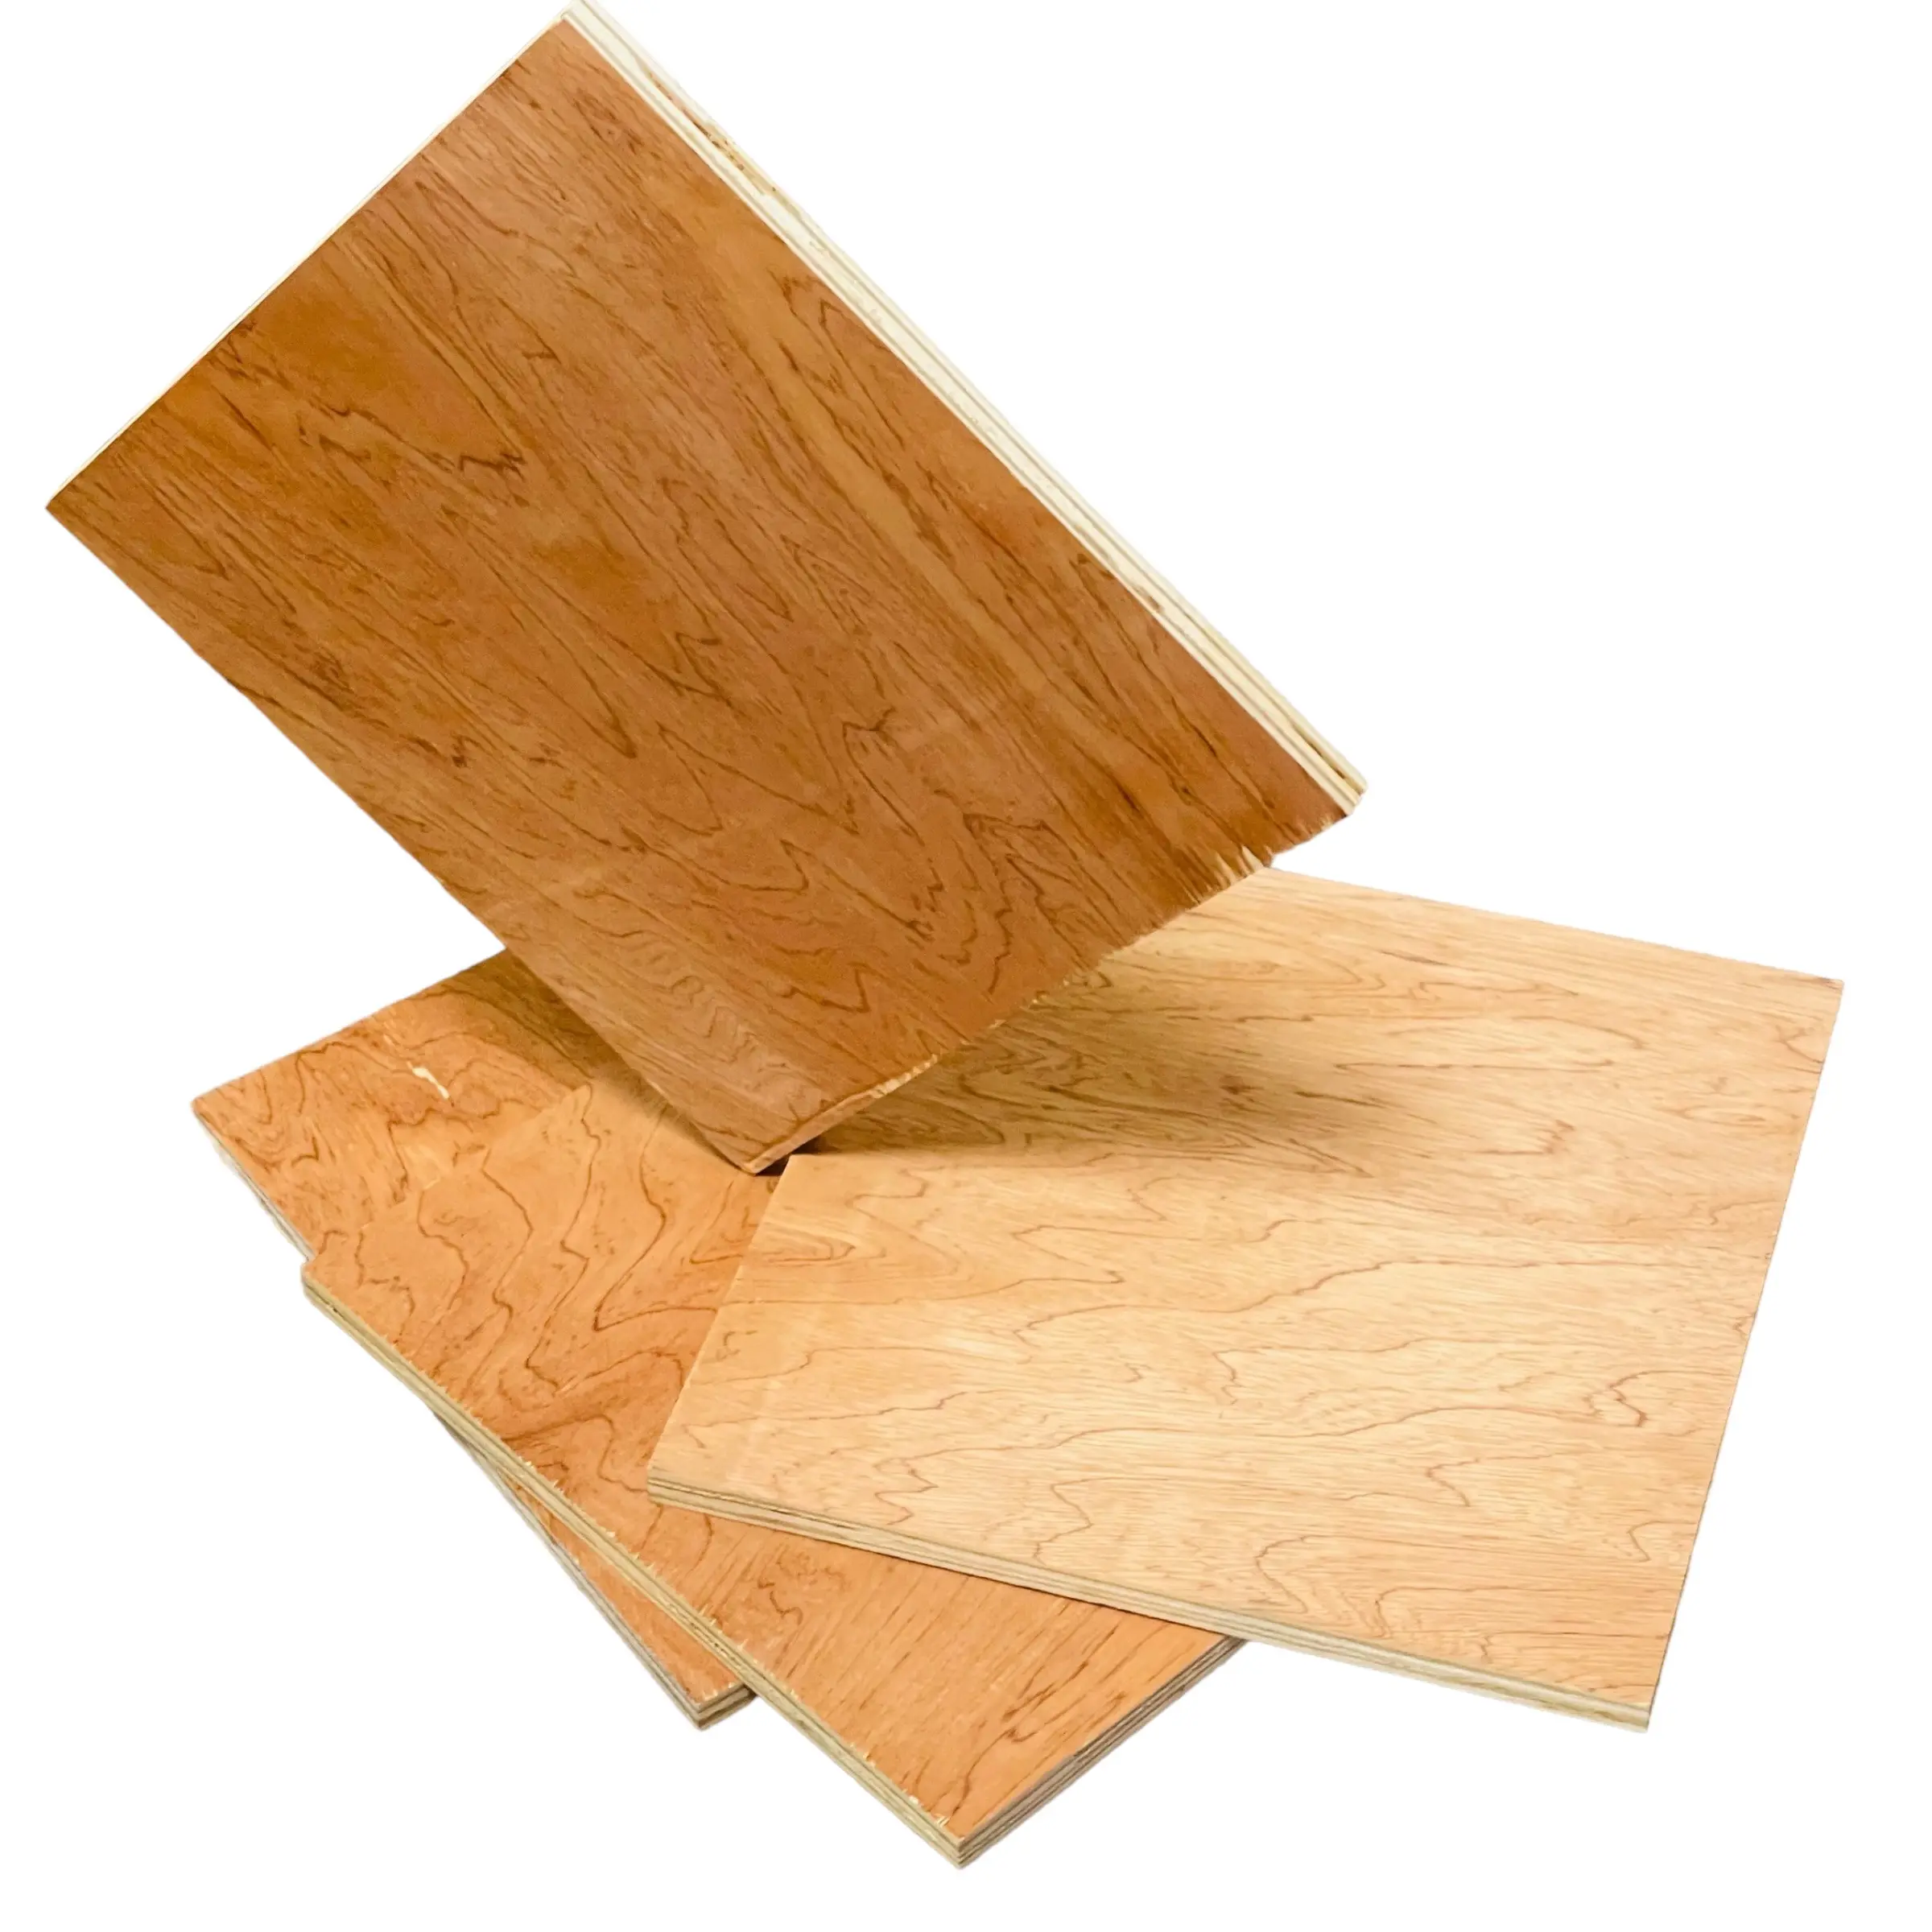 Sperrholz platte 4x8 Sperrholz Günstiger wettbewerbs fähiger Preis Viele Anwendungen Teakholz Bambus Sperrholz Schneide maschinen Made in Vietnam